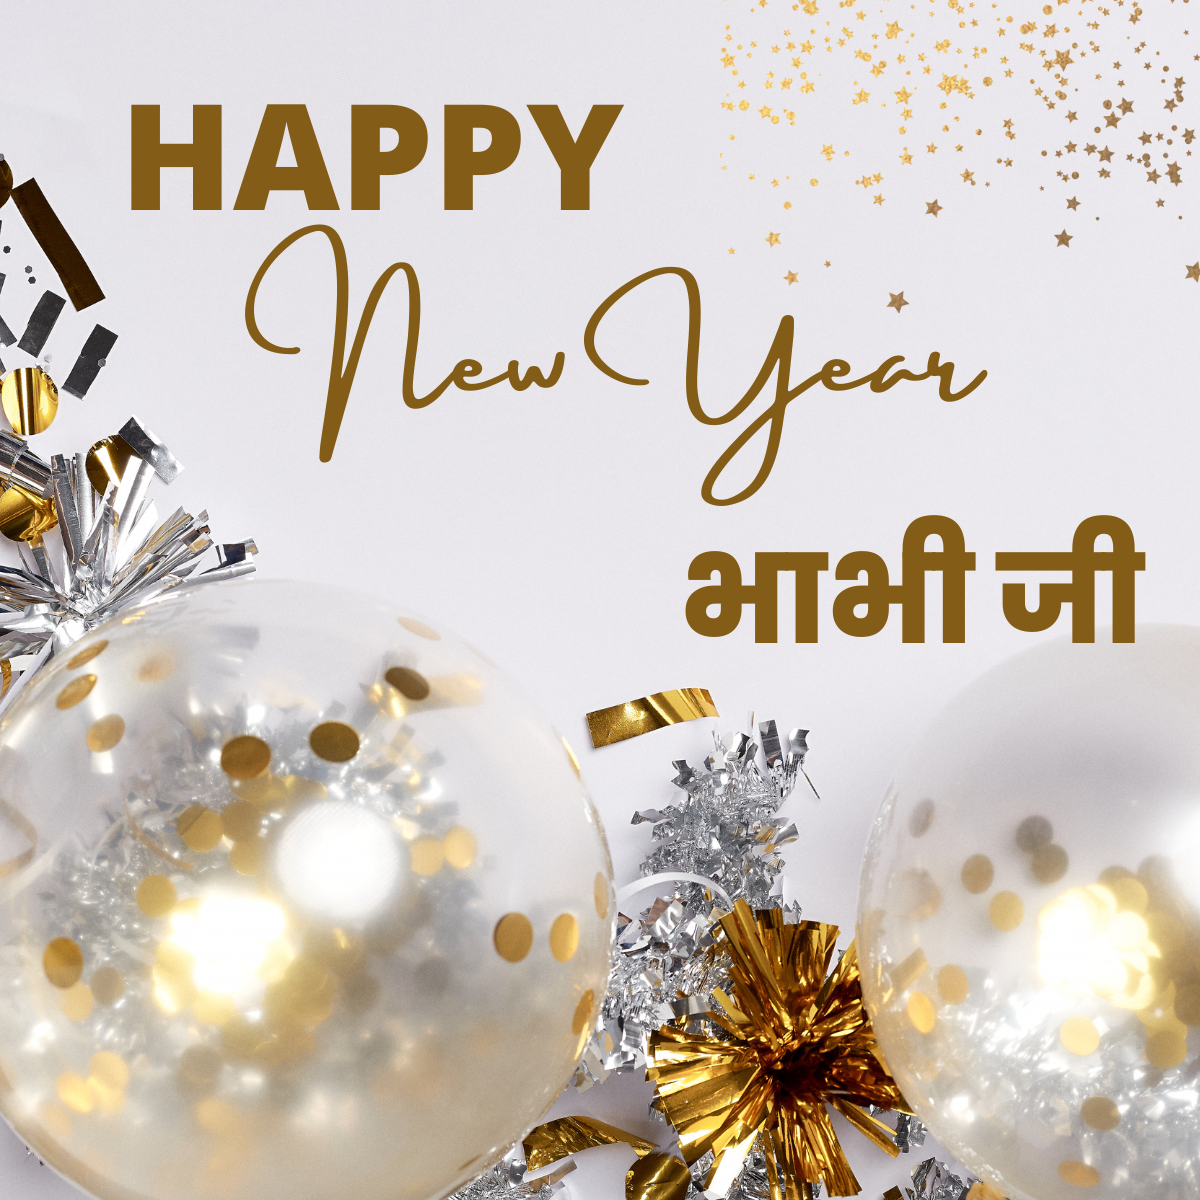 Happy new year bhabhi ji, happy new year bhabhi ji in Hindi